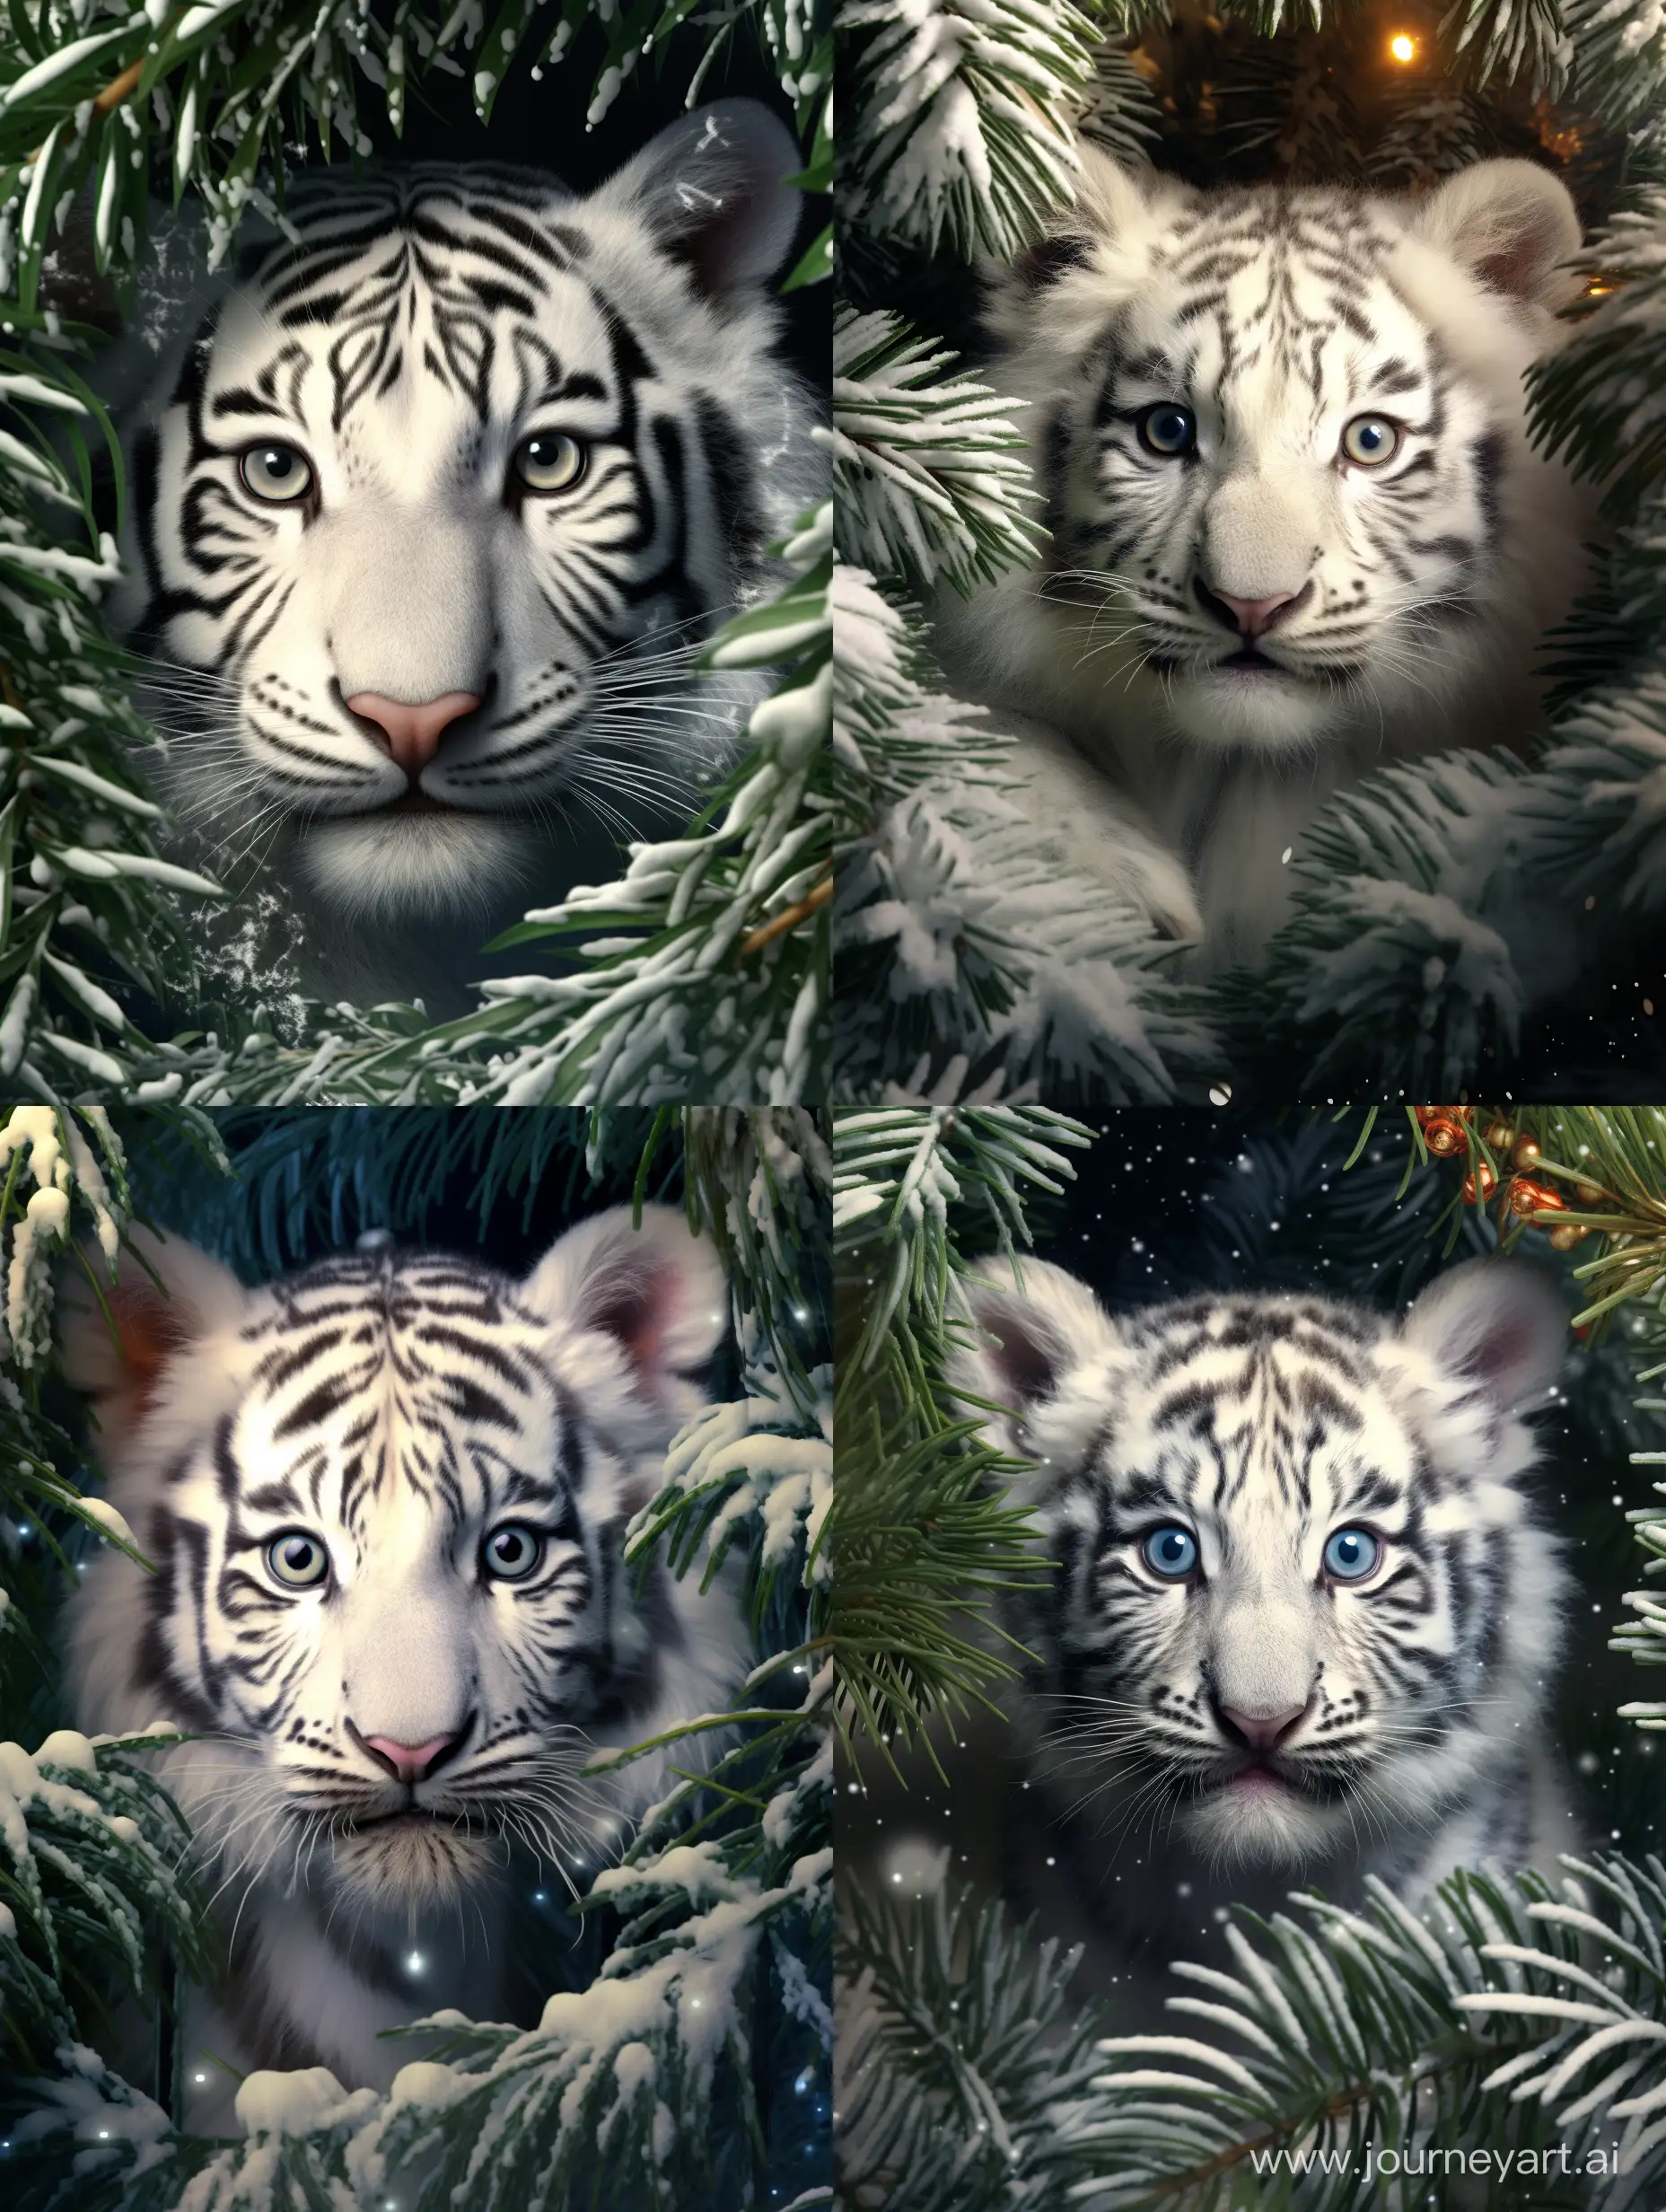 Милый очень пушистый нежный малыш белый тигр выглядывает из под веток  ёлки, красивые глазки  fantasy, сказочный новогодний лес, мягкий свет, glitter,   профессиональное фото, красиво, реалистично, высокое разрешение, высокая детализация, гиперреализм,  высокодетализированная цифровая живопись, f/19,  искрящийся снег, 4k